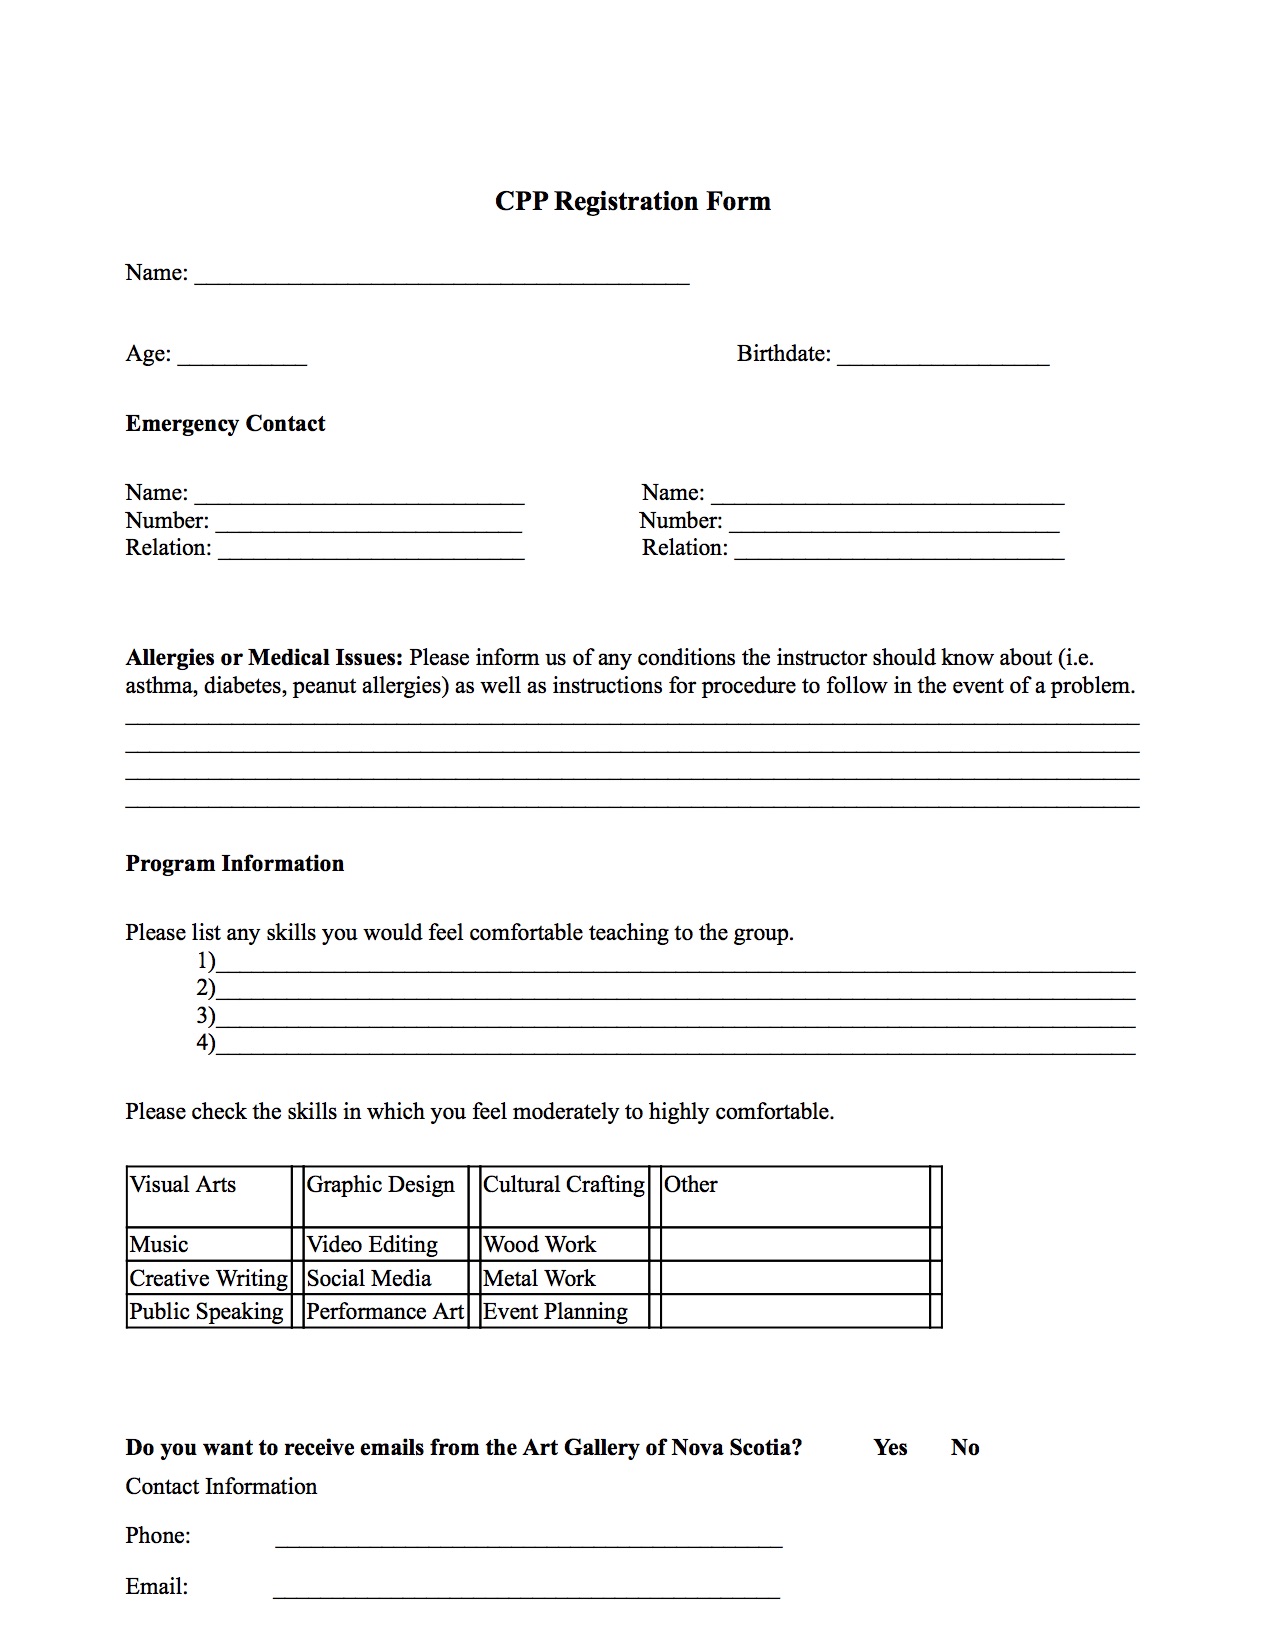 cpp-registration-form